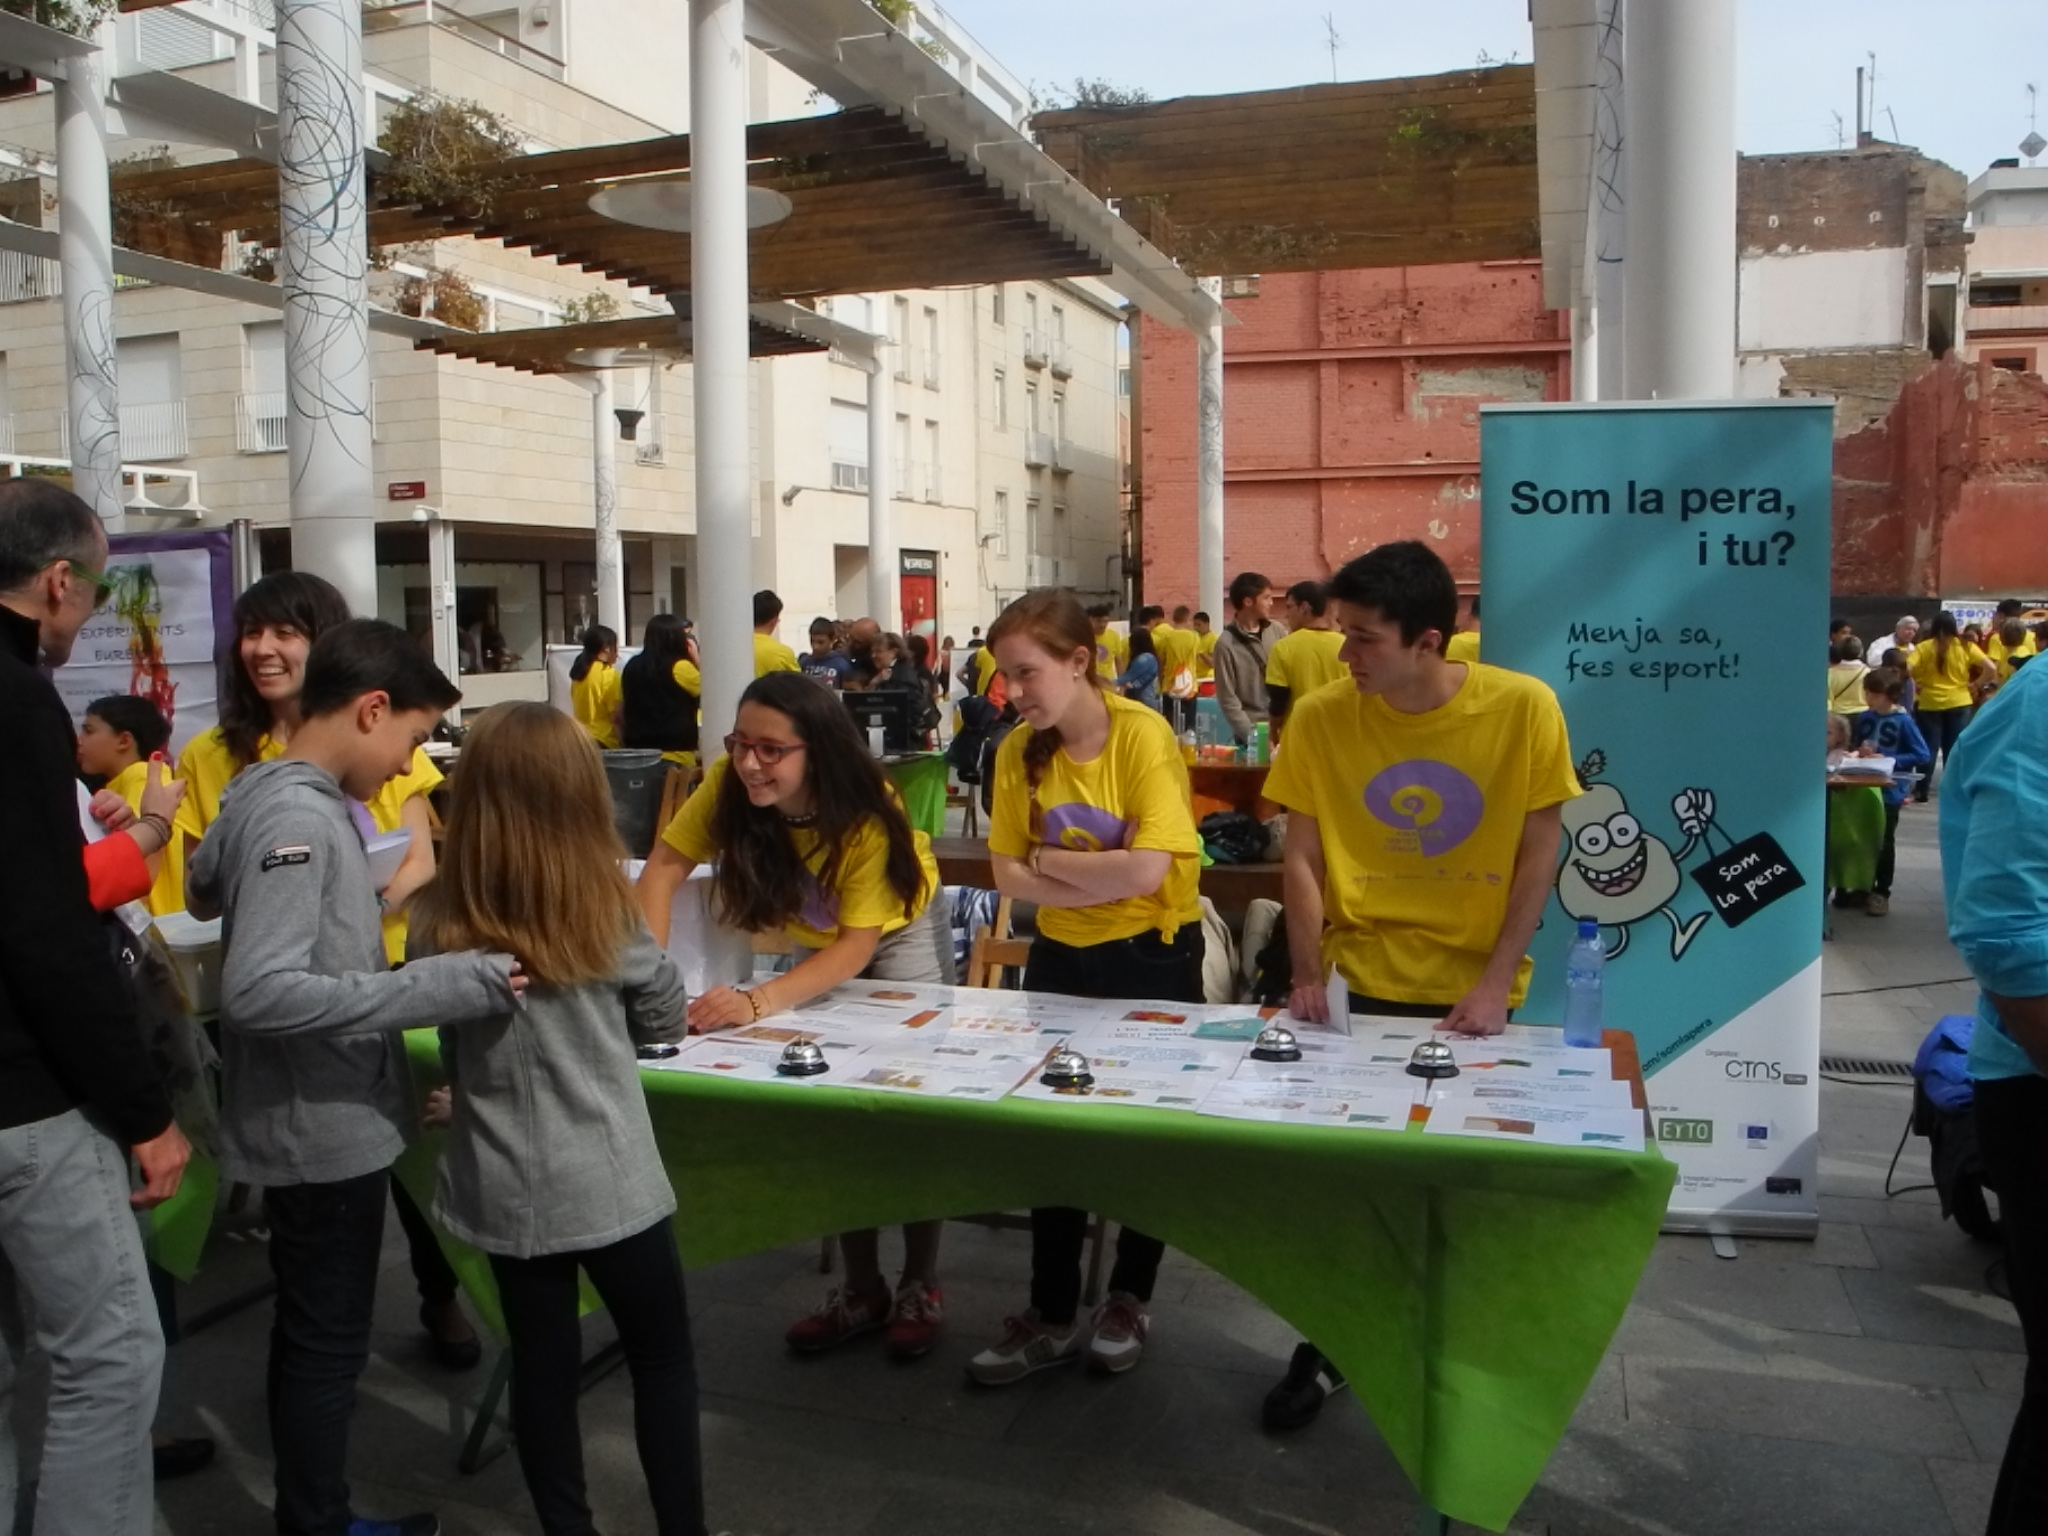 Els alumnes dels instituts Gabriel Ferrater i Gaudí, junt amb el CTNS i la Facultat de Química, van portar a la Fira el seu projecte "Som la Pera"